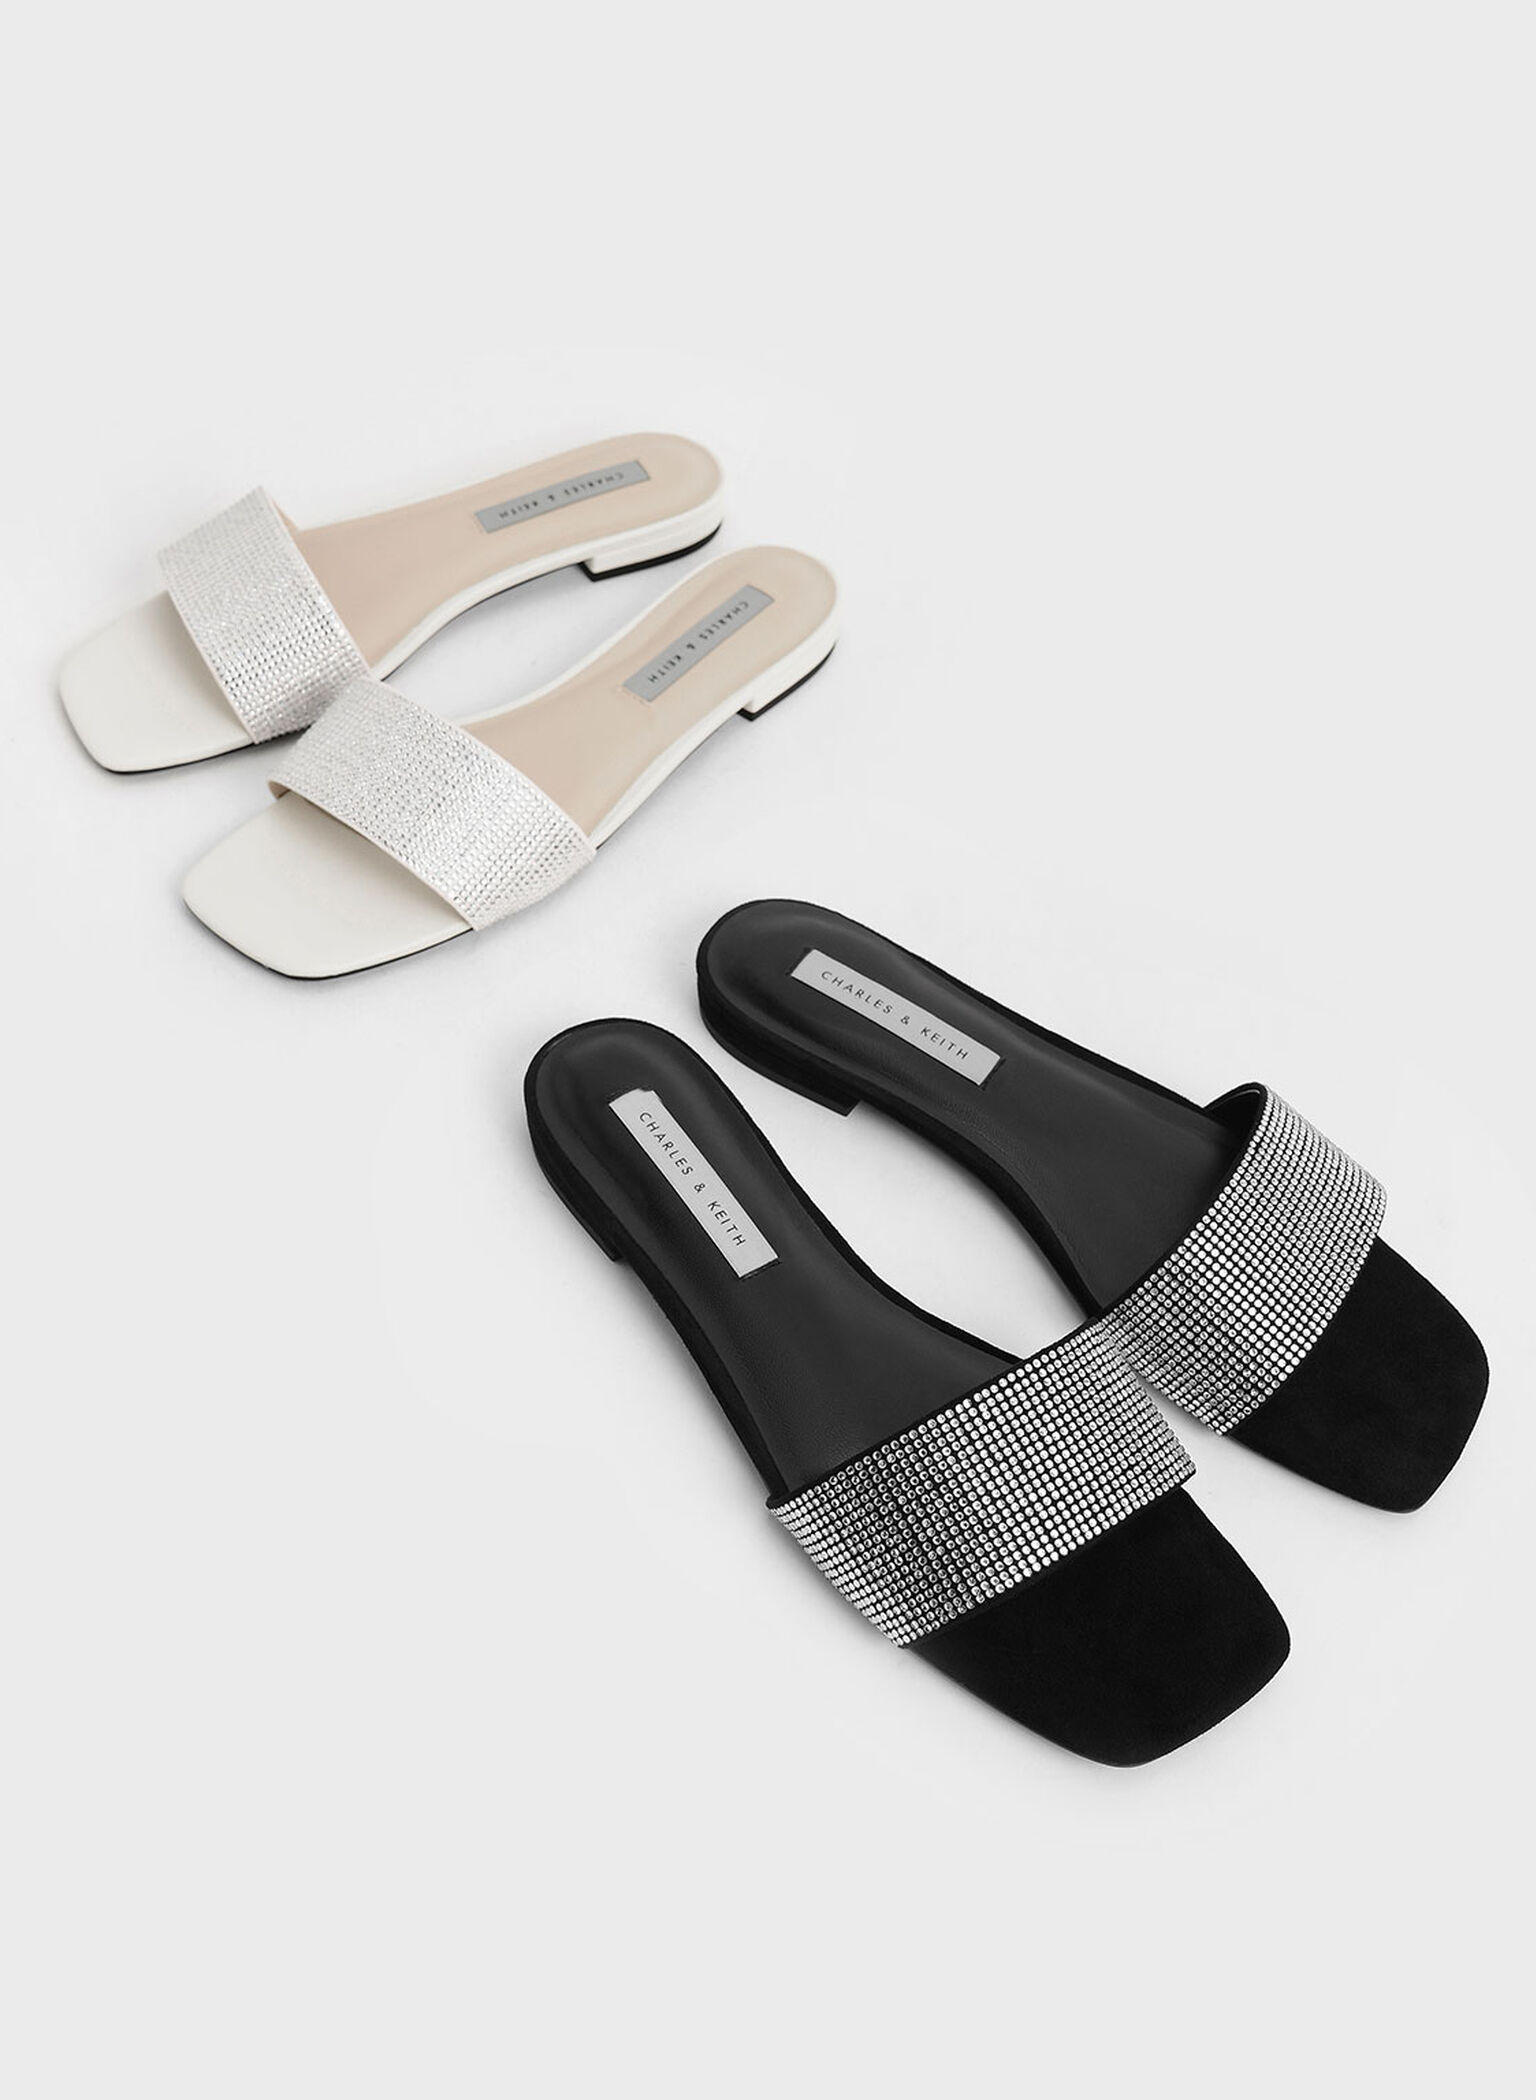 Gem Embellished Slide Sandals, Cream, hi-res